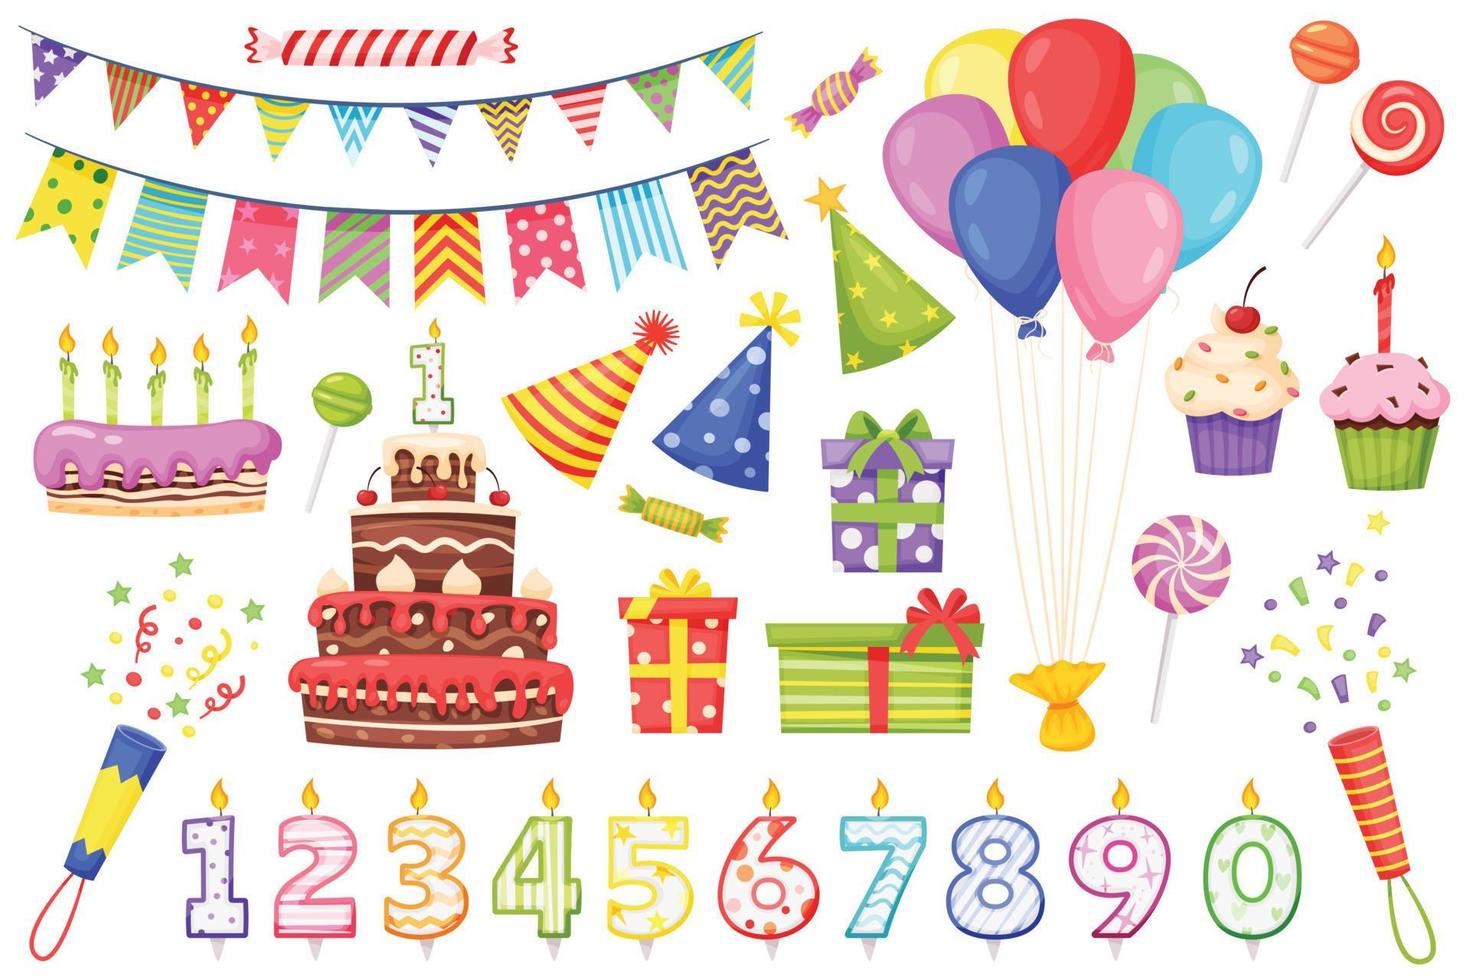 tekenfilm verjaardag partij decoratie elementen, cakes met kaarsen. kleurrijk vlaggedoek vlaggen, ballonnen, partij hoeden, geschenk dozen, snoepjes vector reeks